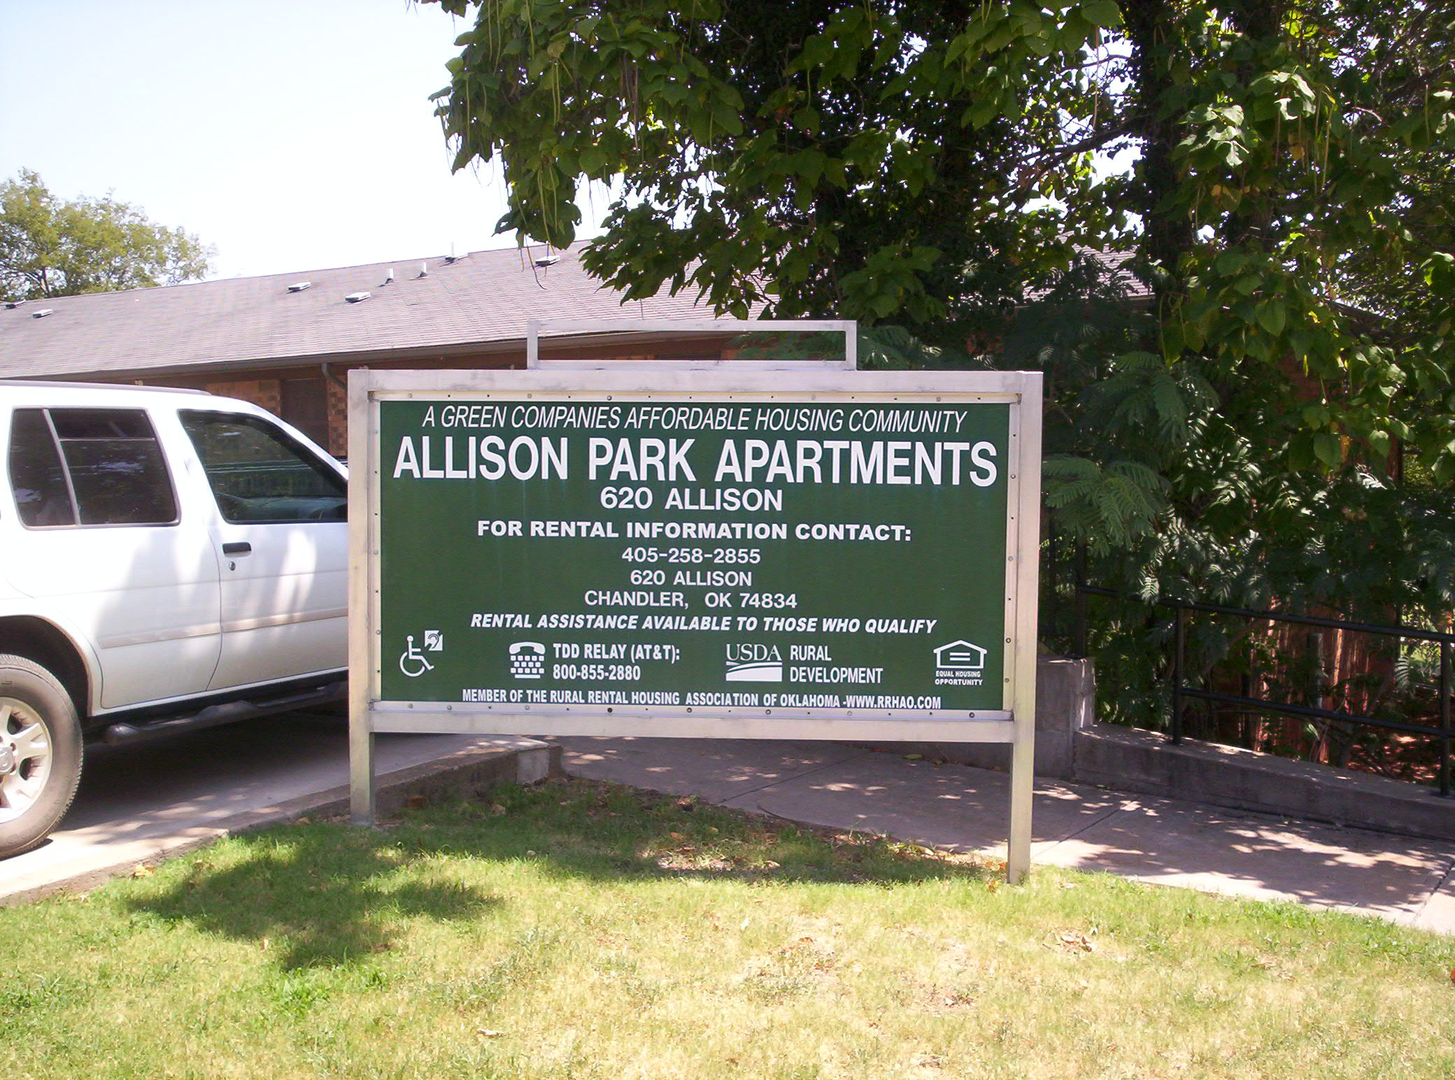 ALLISON PARK APARTMENTS